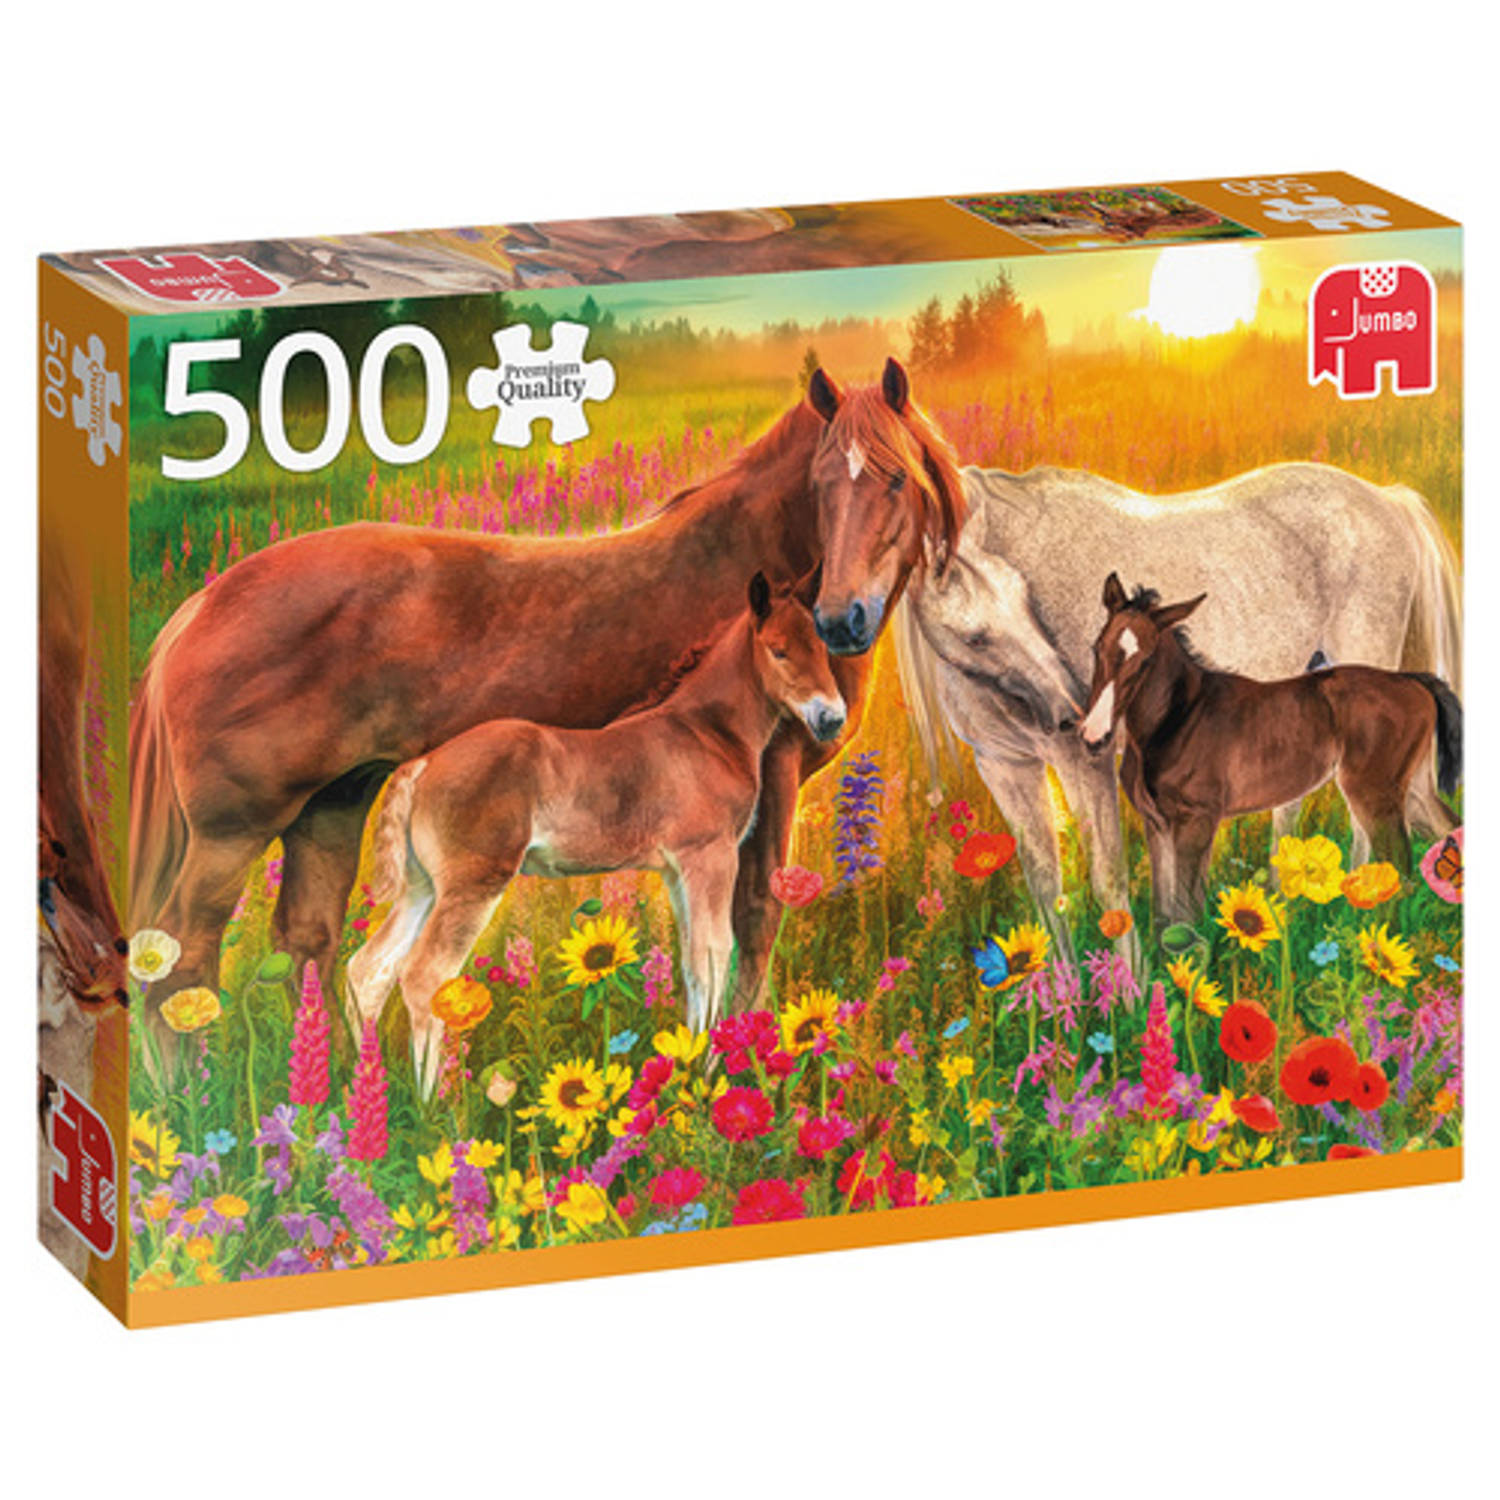 Jumbo Premium Collection Puzzel Horses in the Meadow - Legpuzzel - 500 stukjes